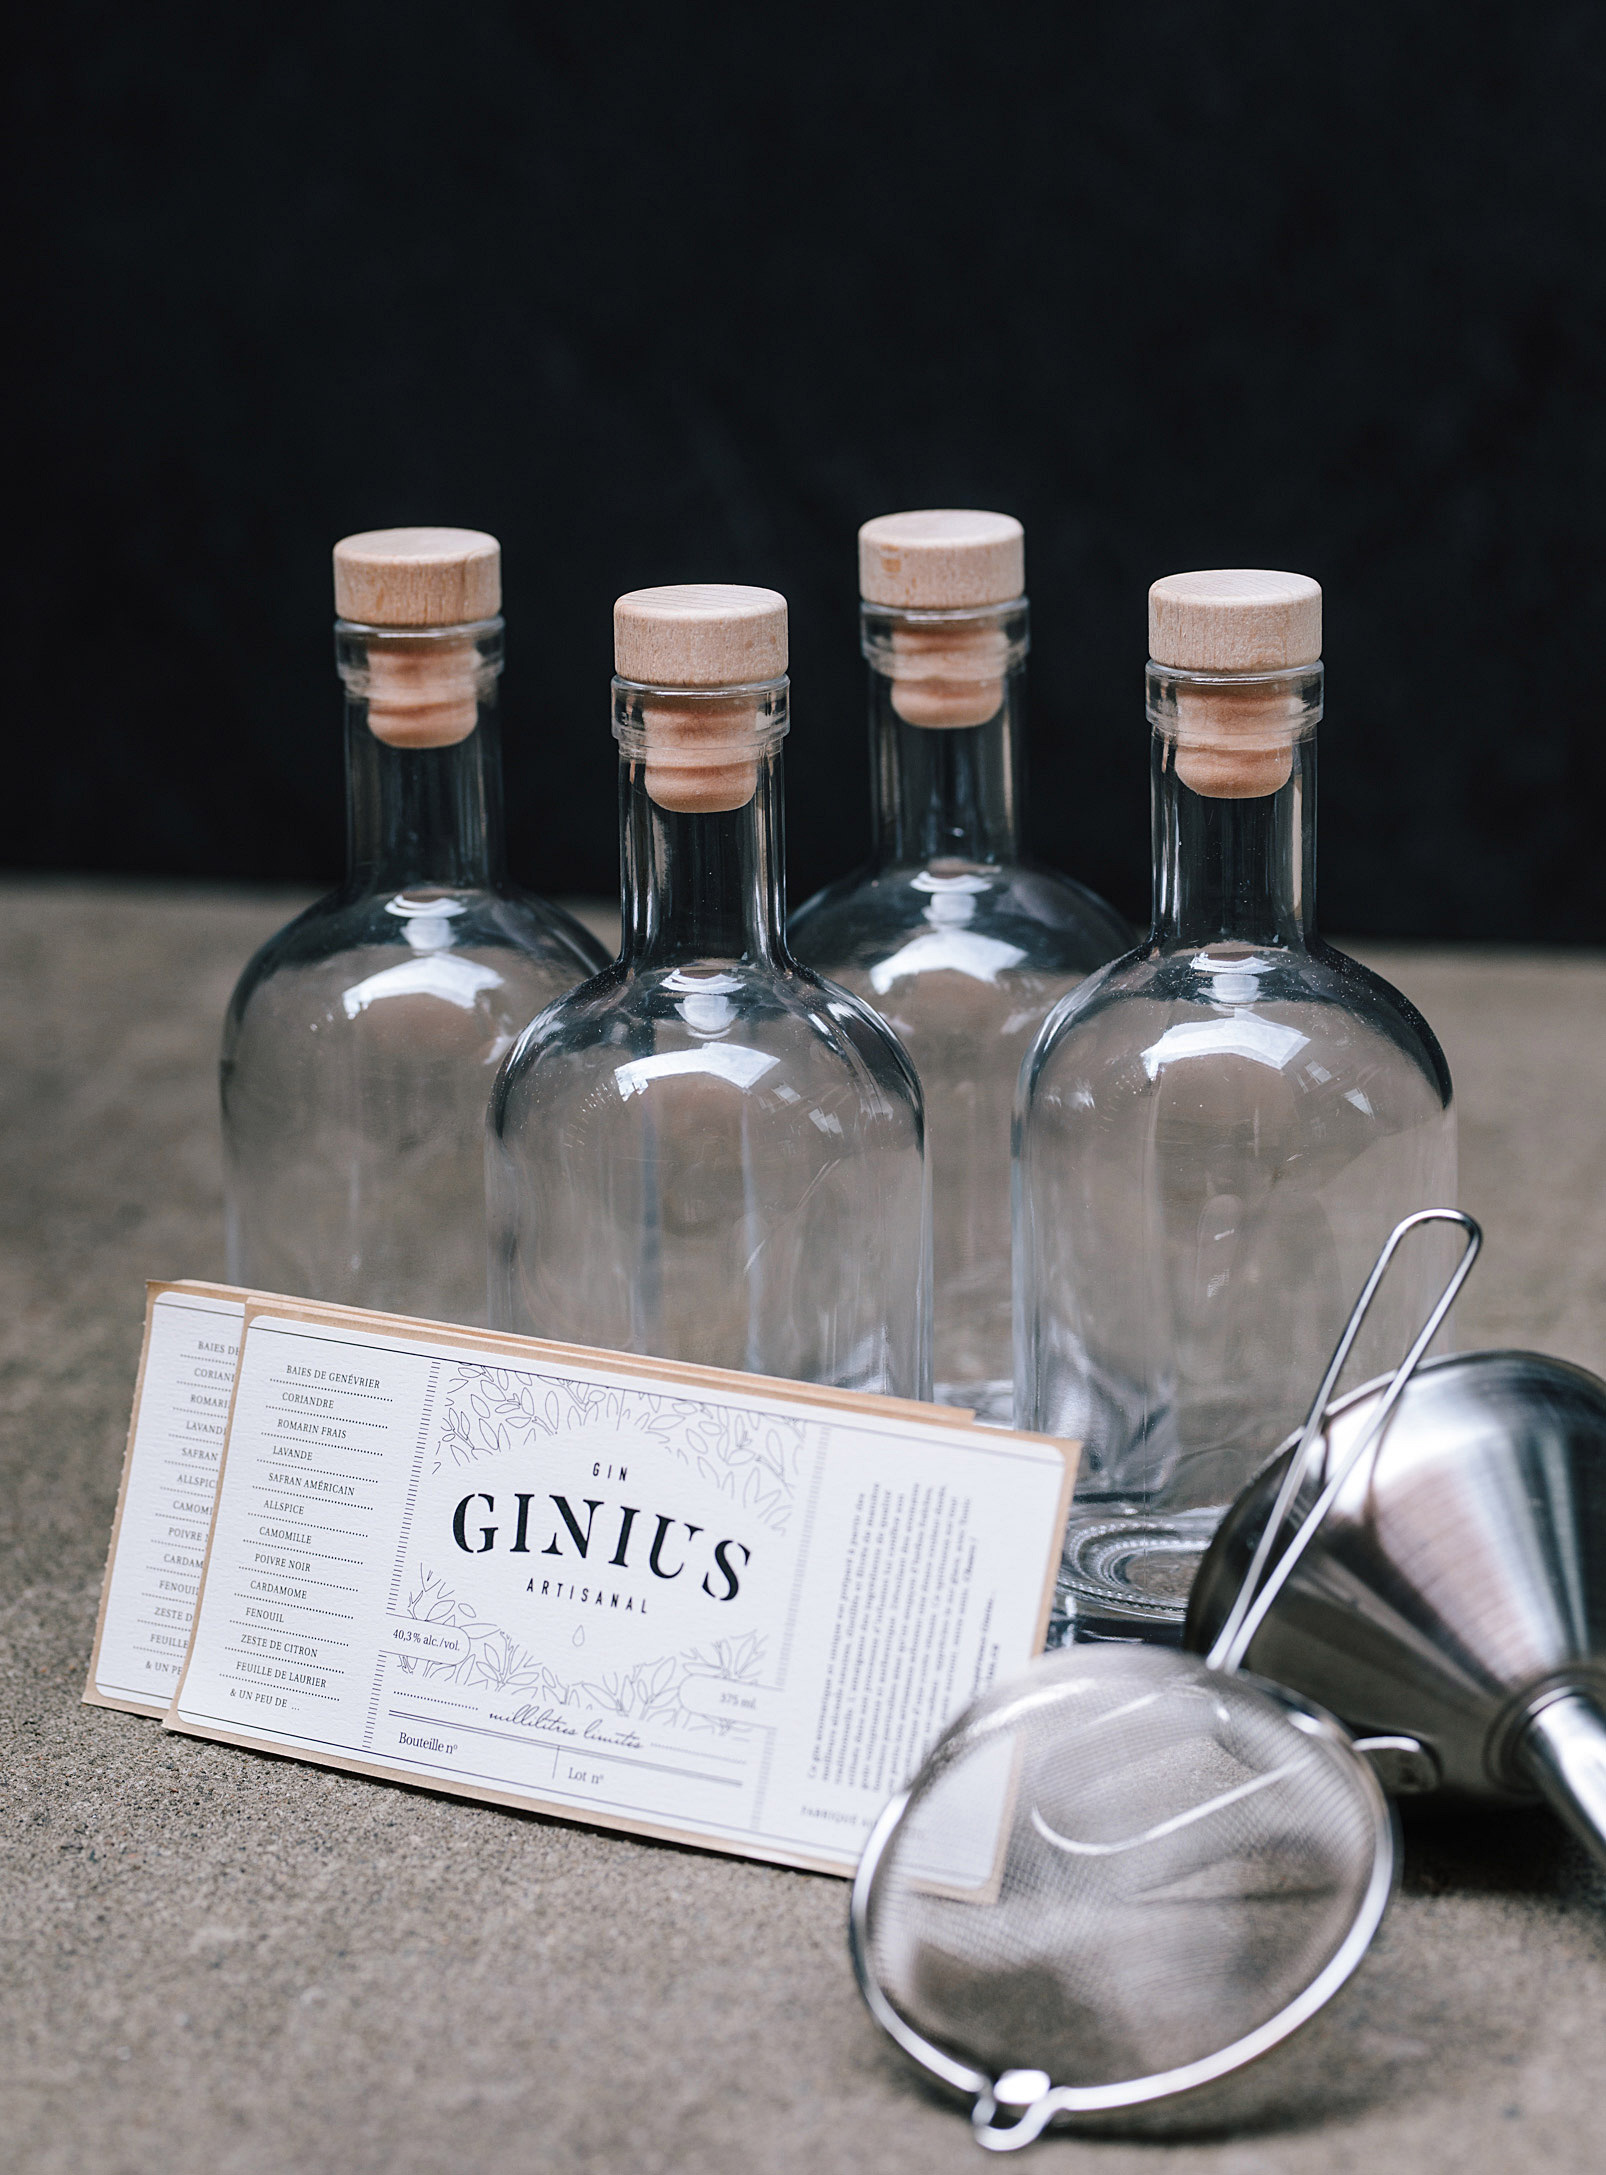 Ginius - L'ensemble pour augmenter la production de gin artisanal